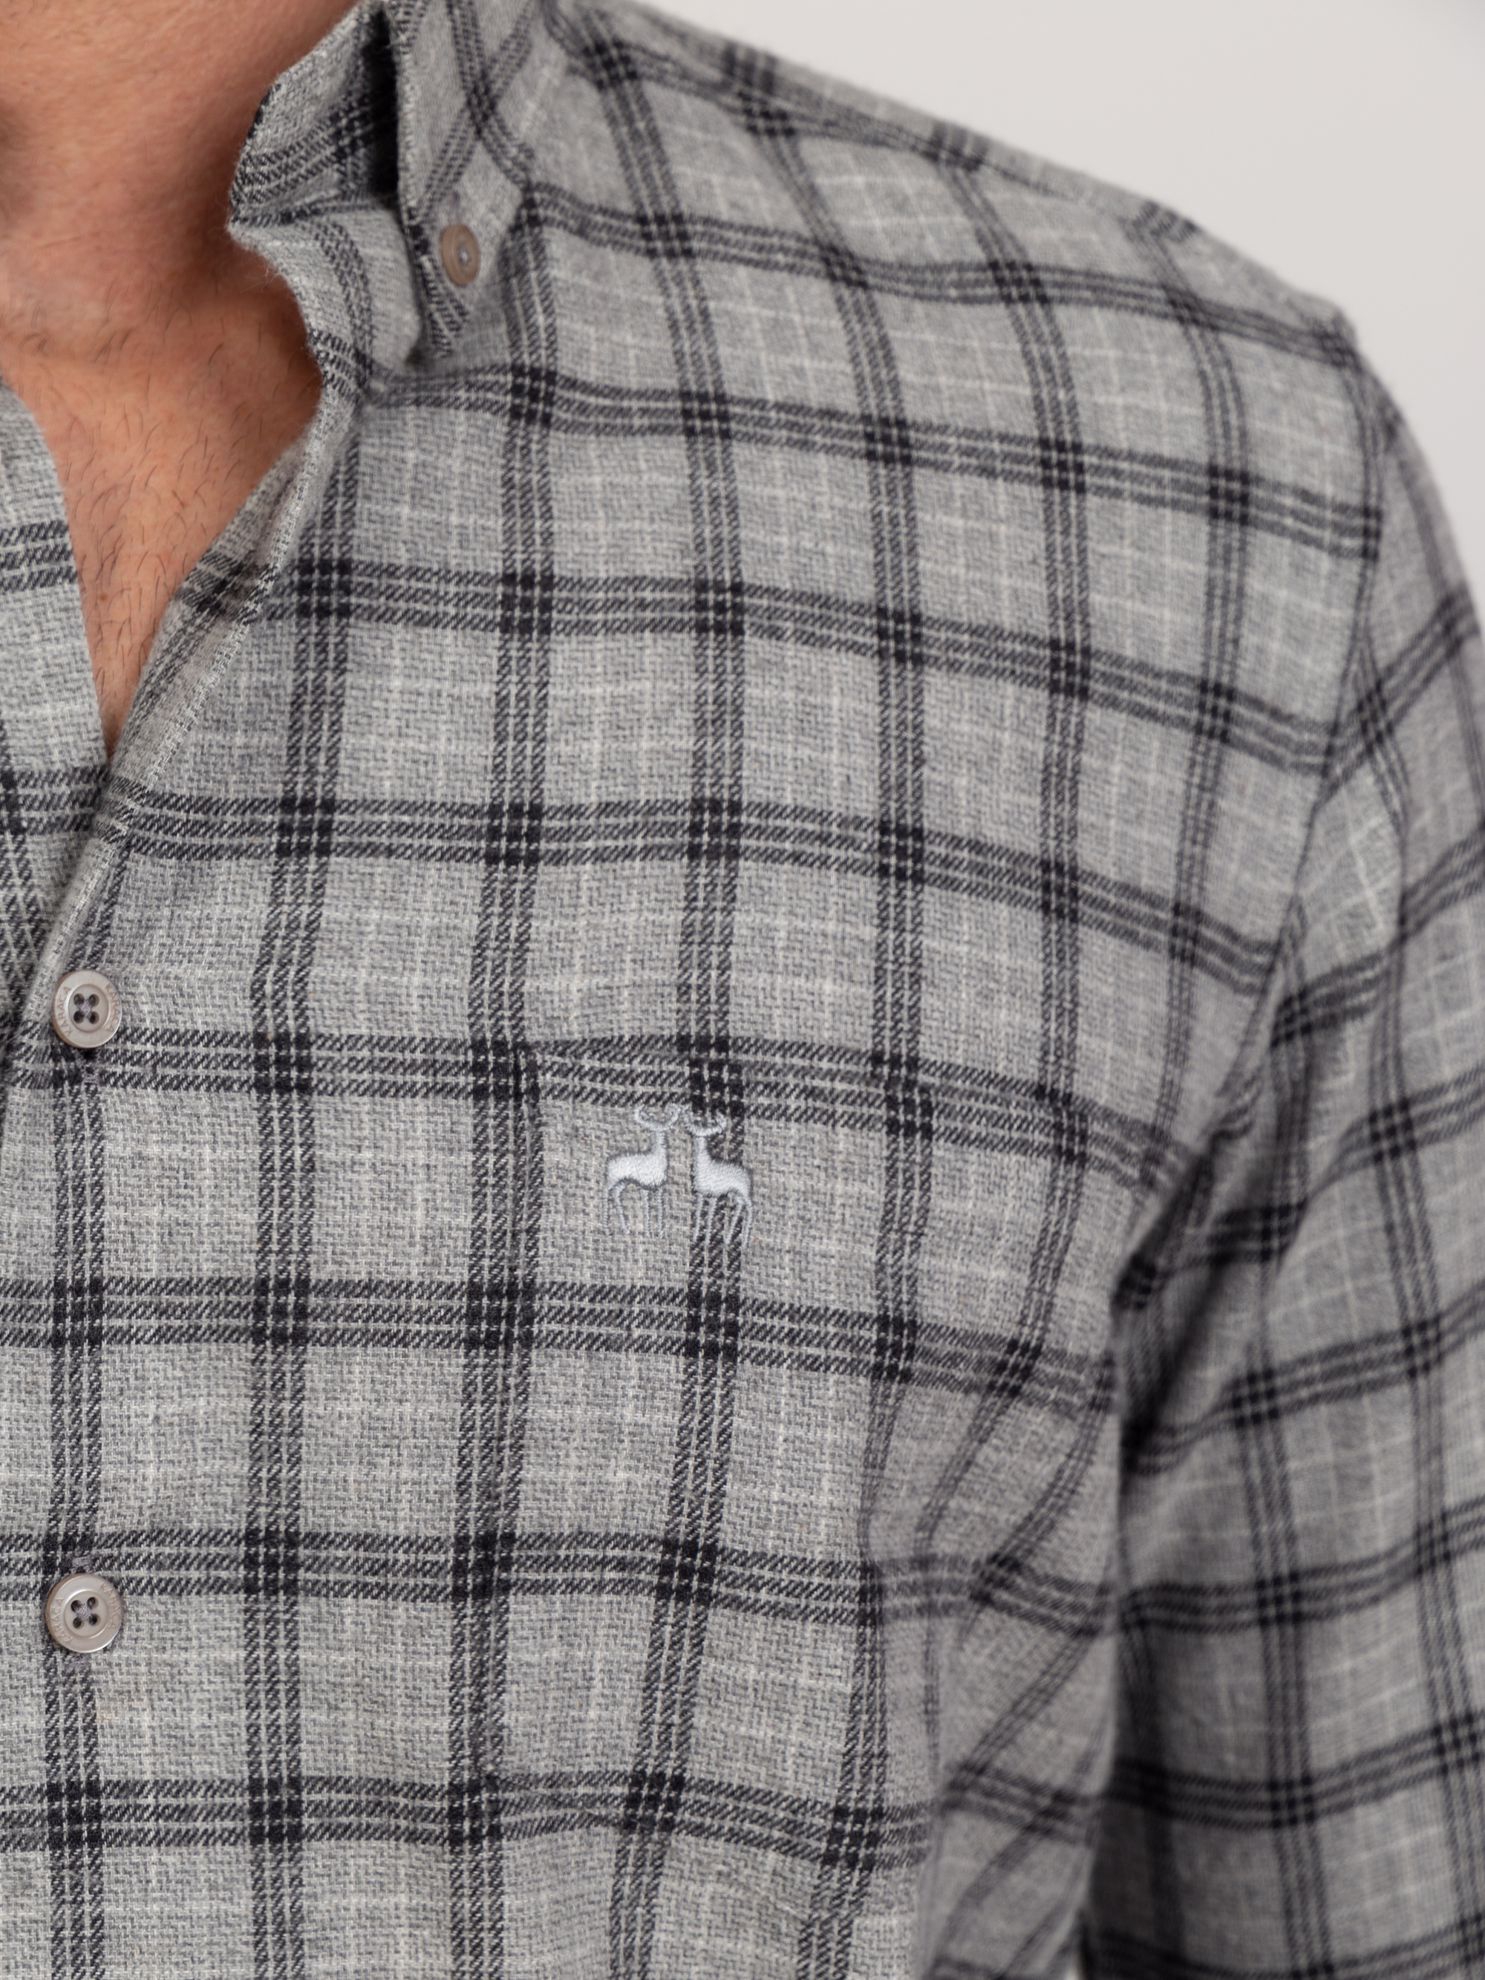 Karaca Erkek Büyük Beden Gömlek-Gri. ürün görseli